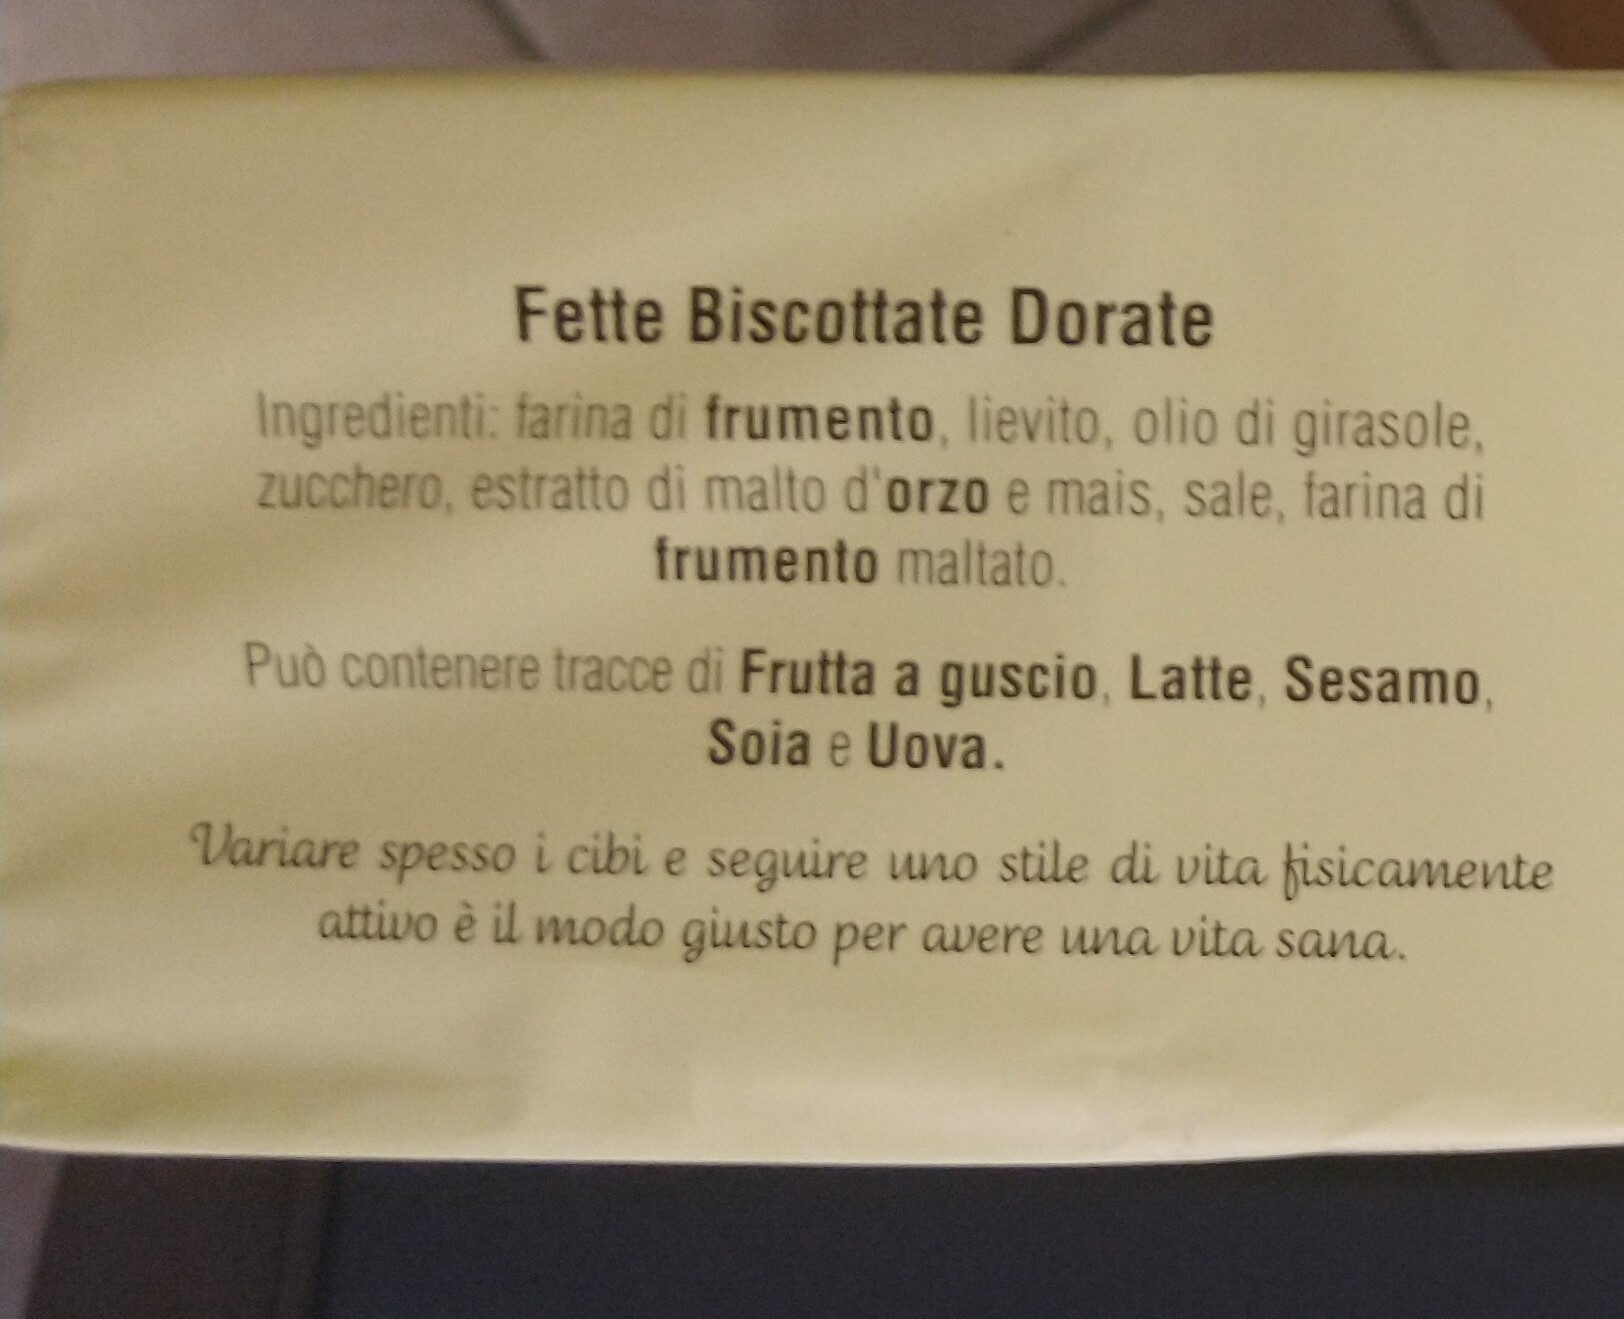 ITALIAN FETTE BISCOTTATE UK - MULINO BIANCO FETTE DORATE 80 G. - Ingredienti